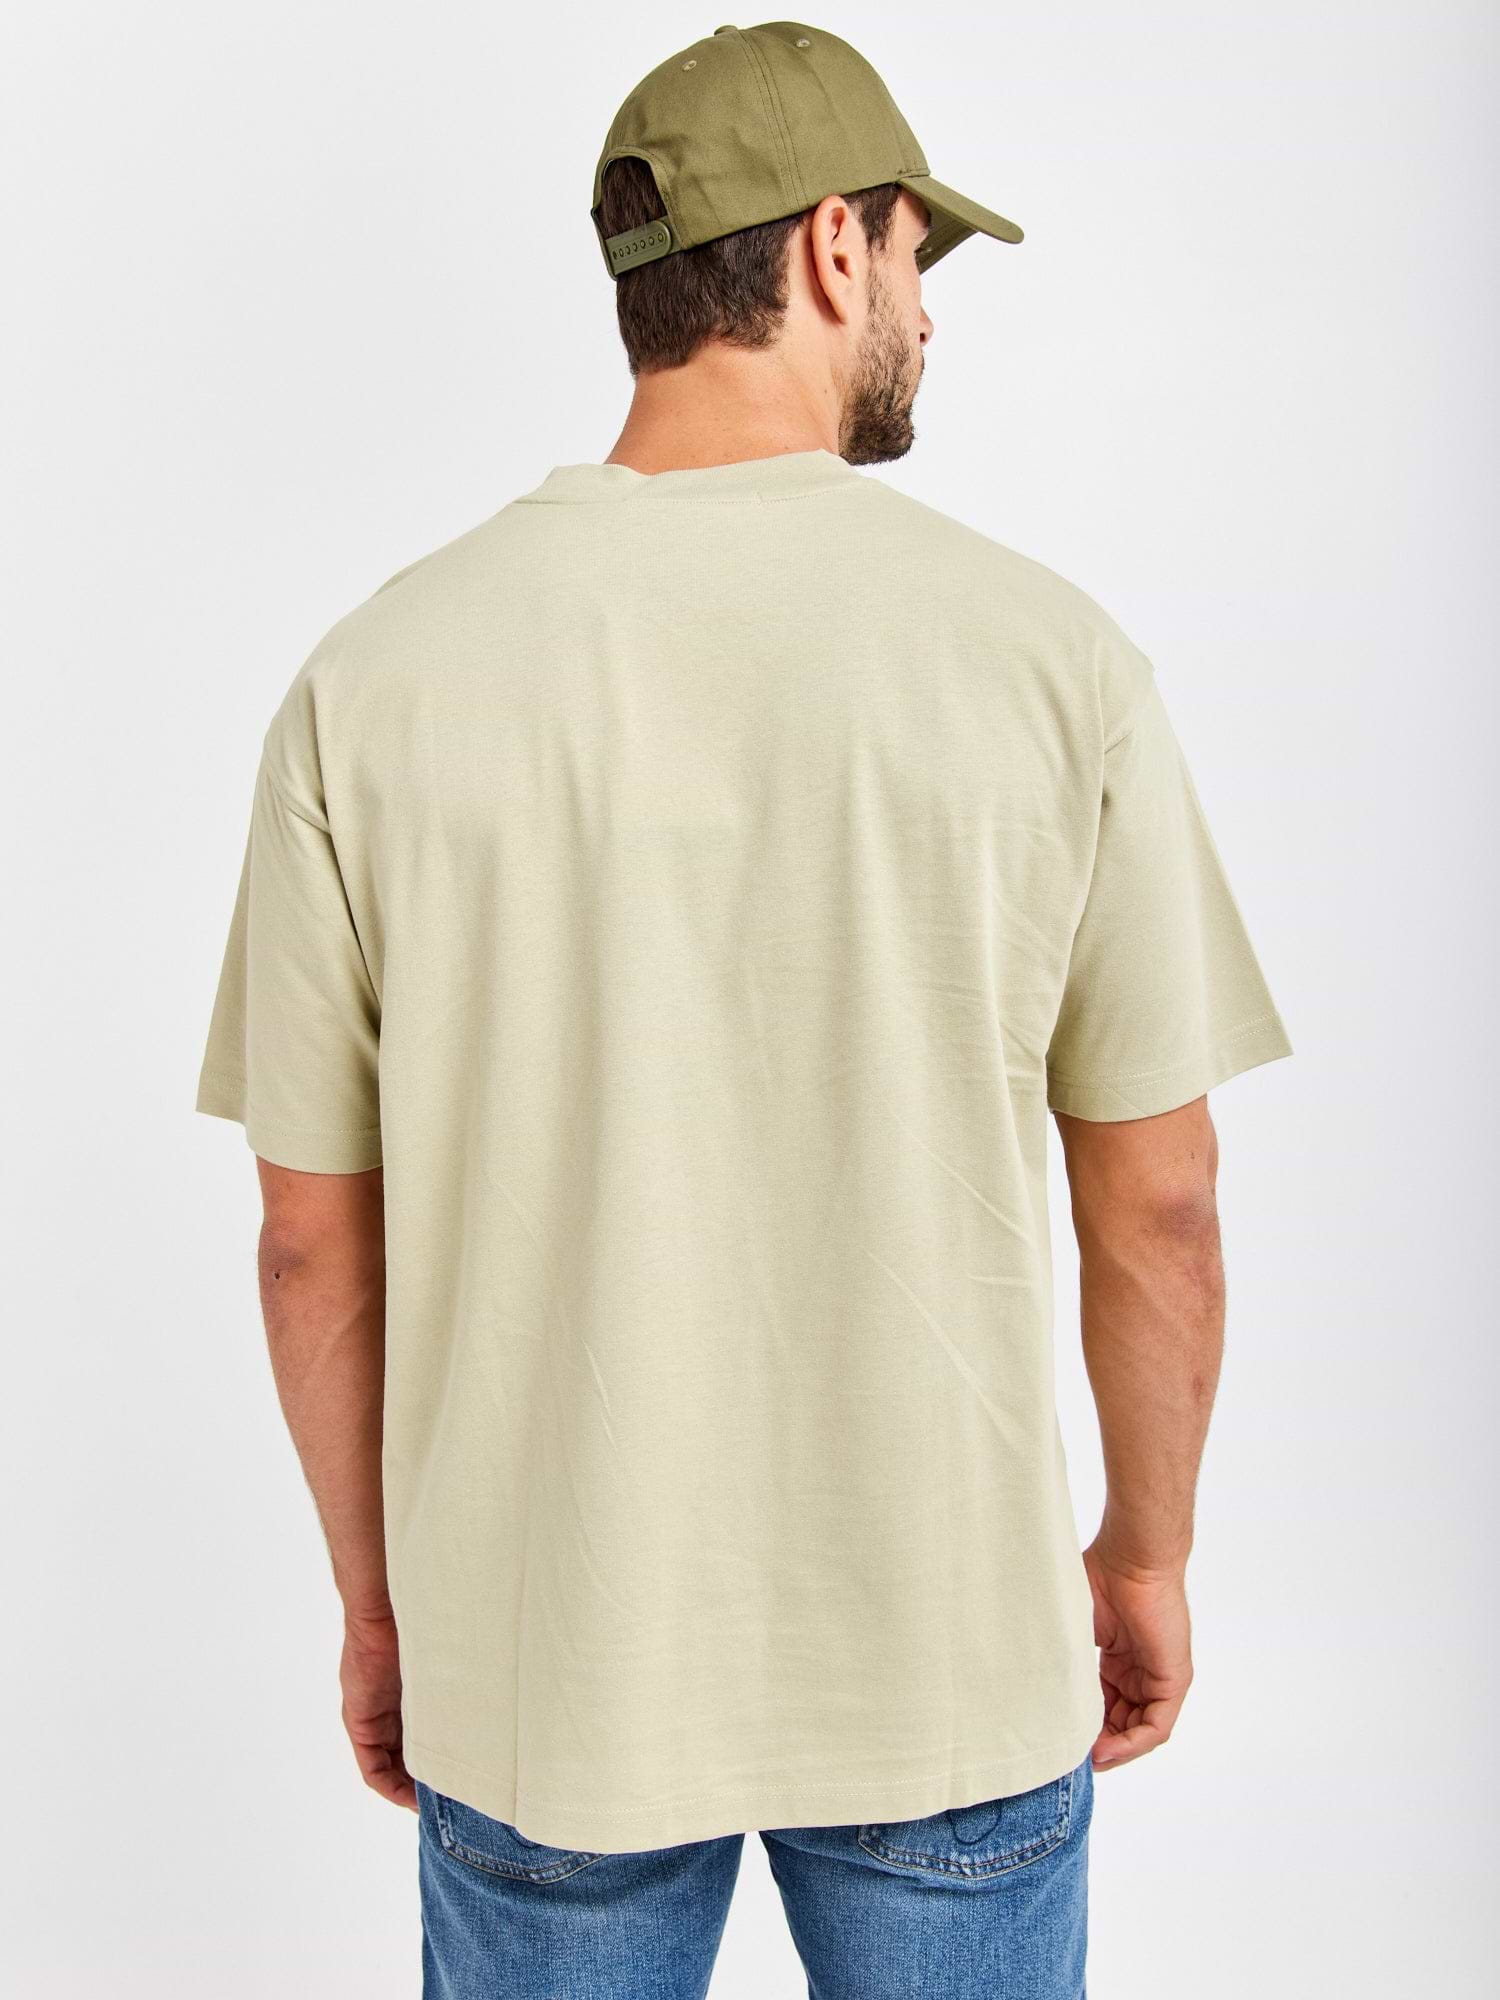 חולצה קצרה עם כיס- Ck|קלווין קליין